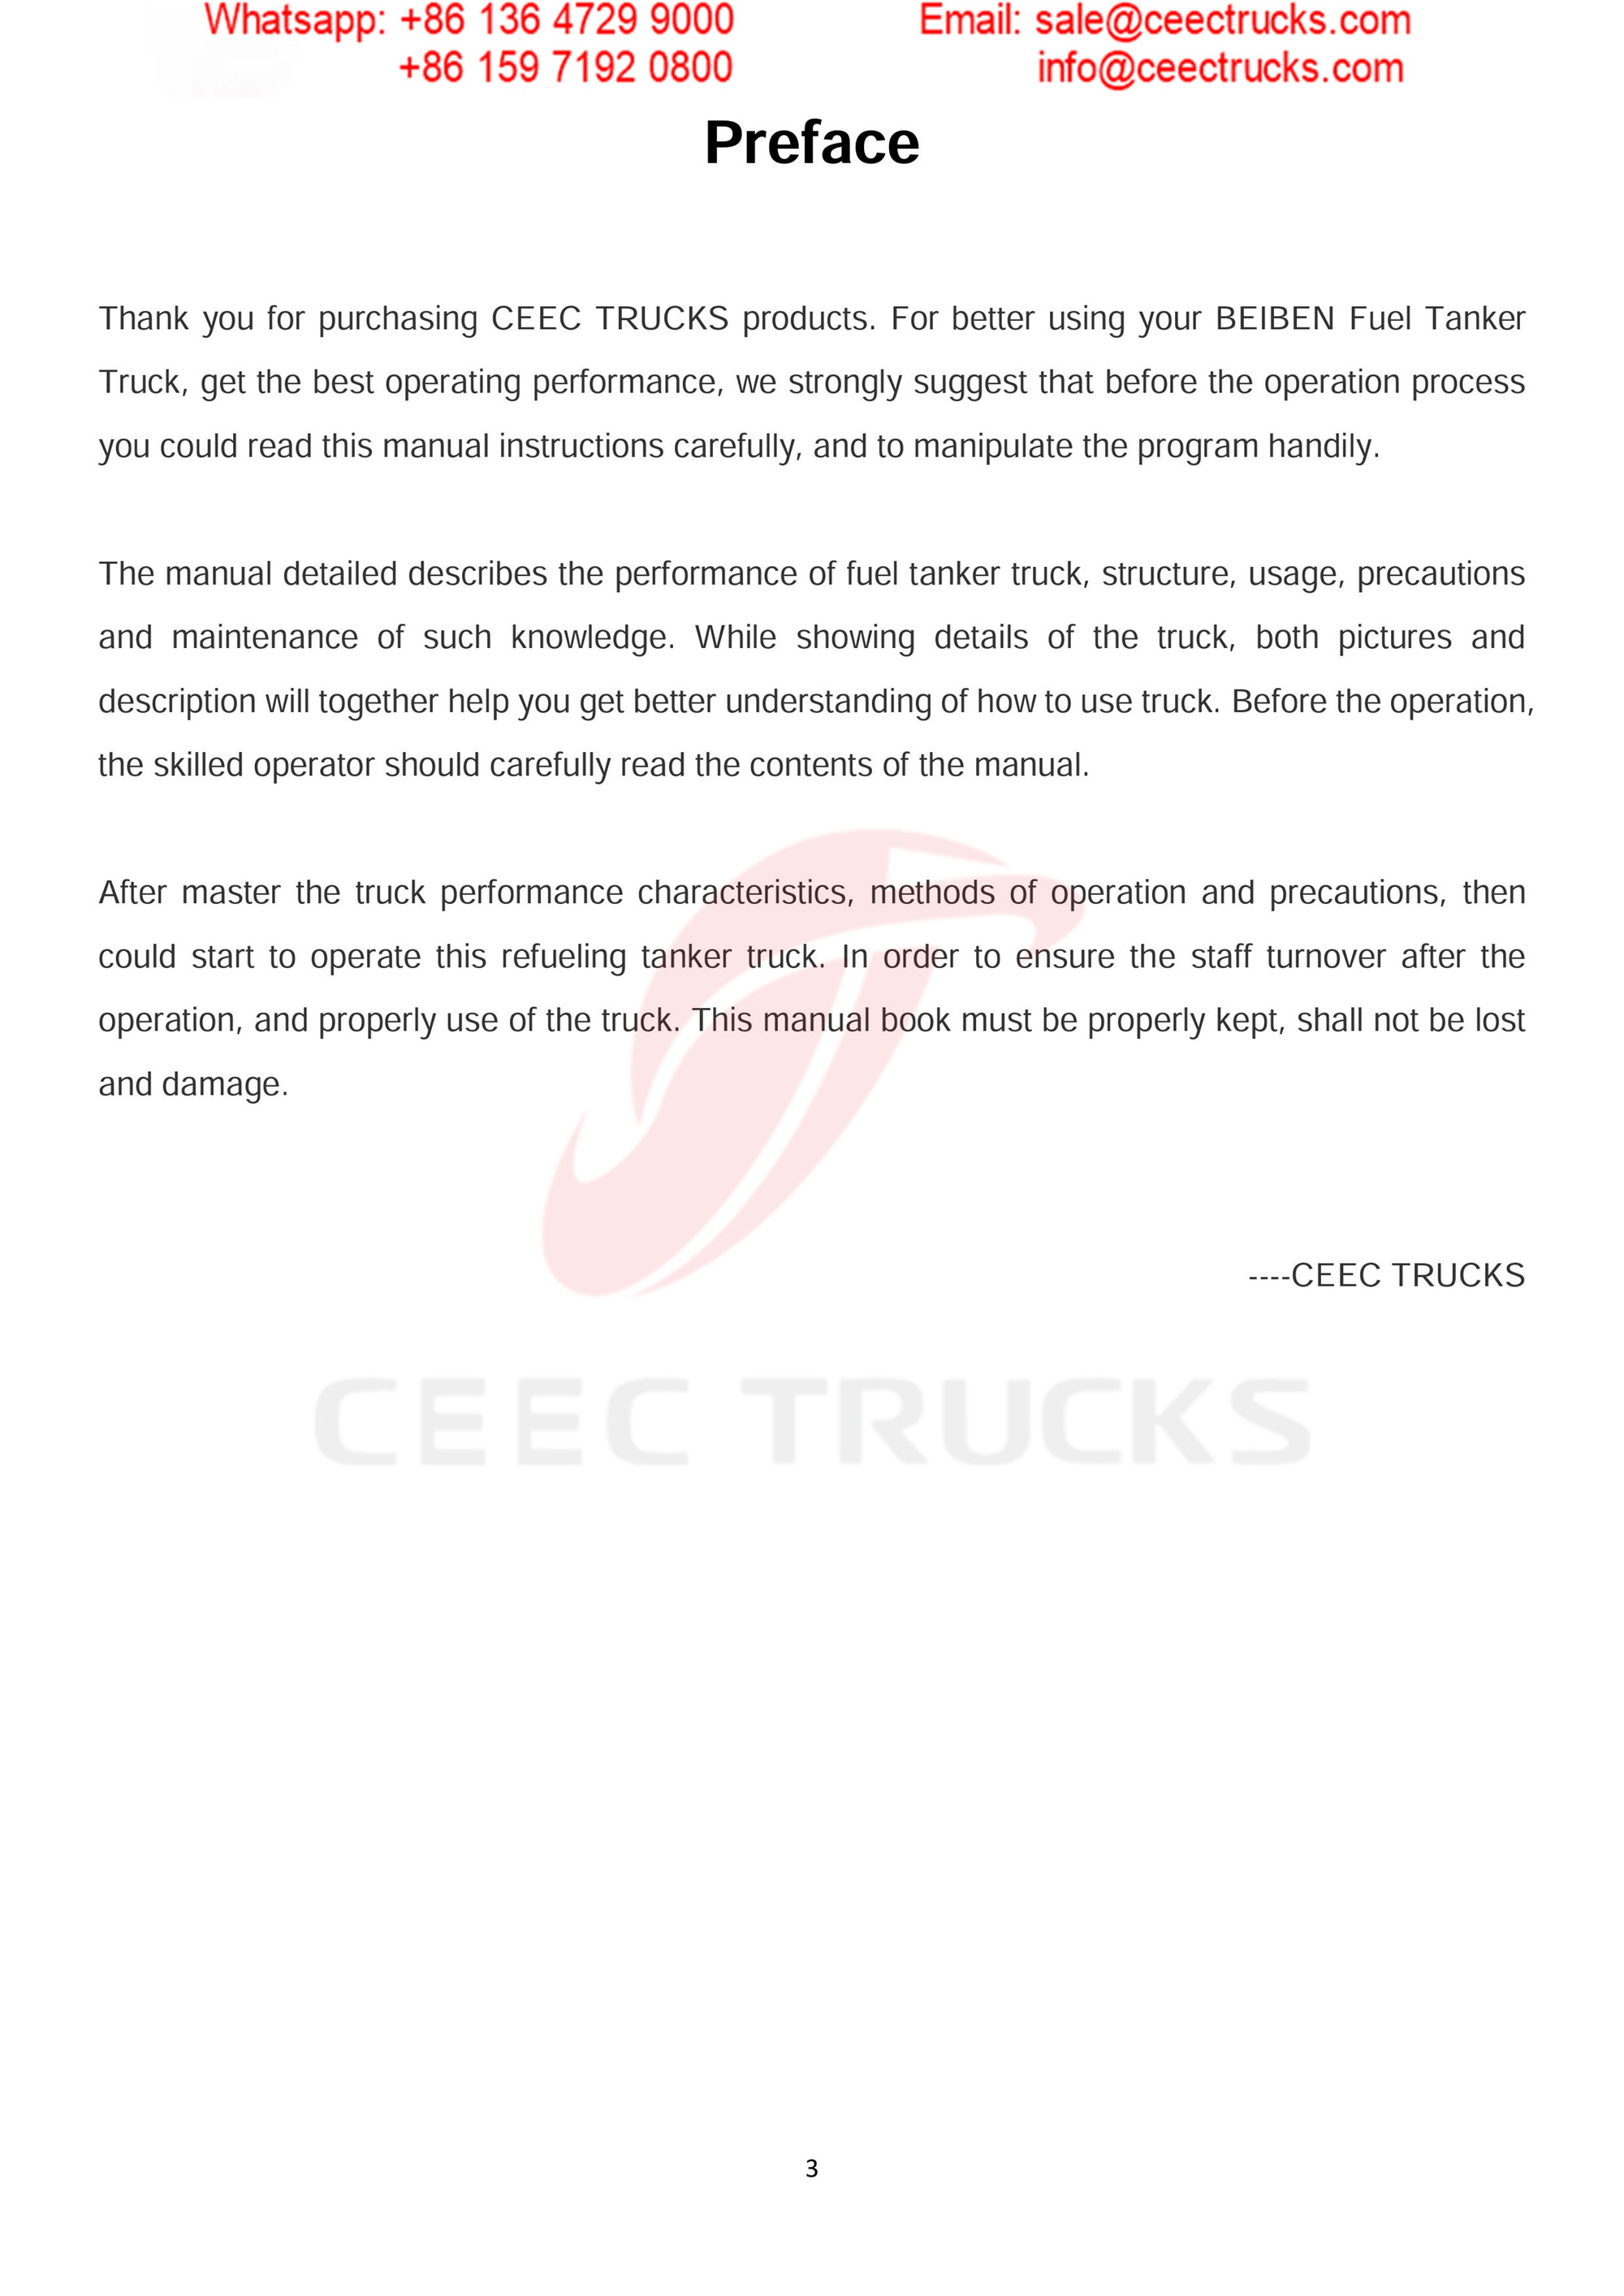 BEIBEN 2530 fuel tanker truck export Carribean Sea